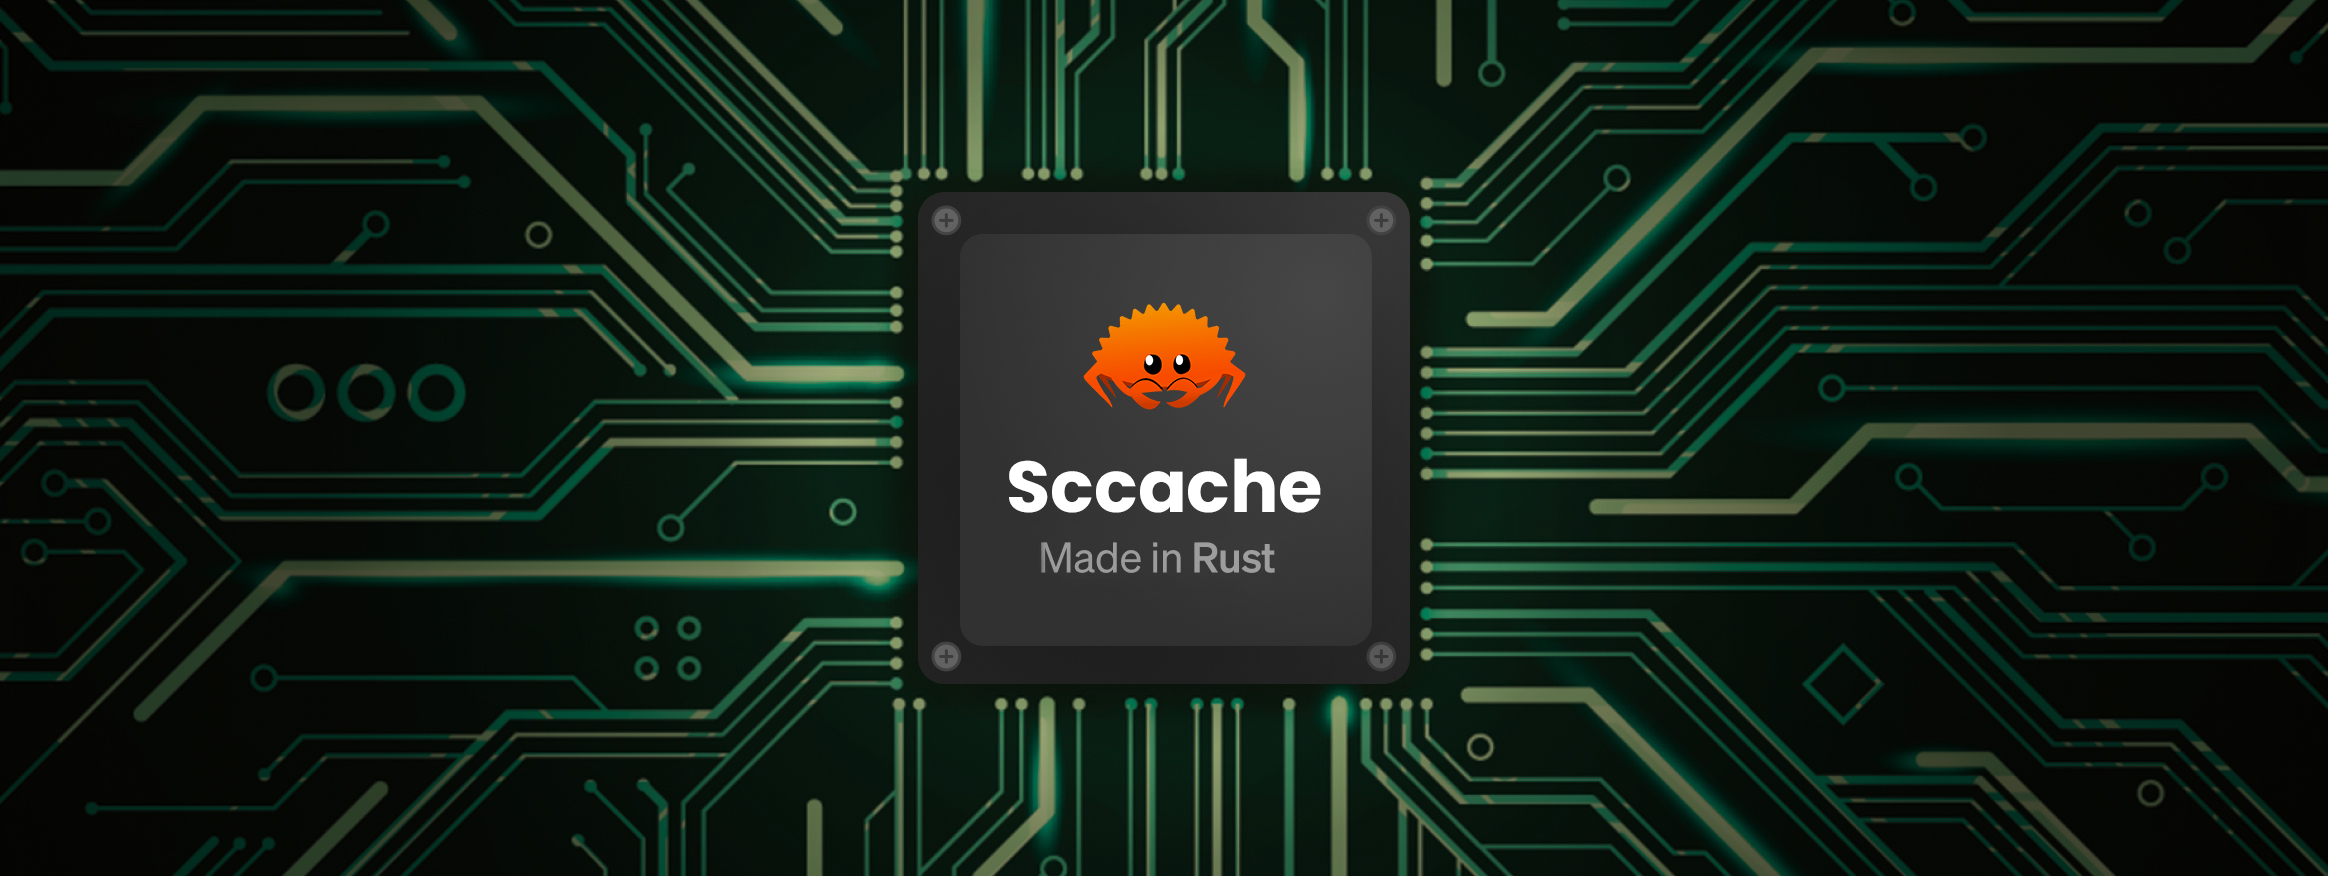 为什么你该试试 Sccache？